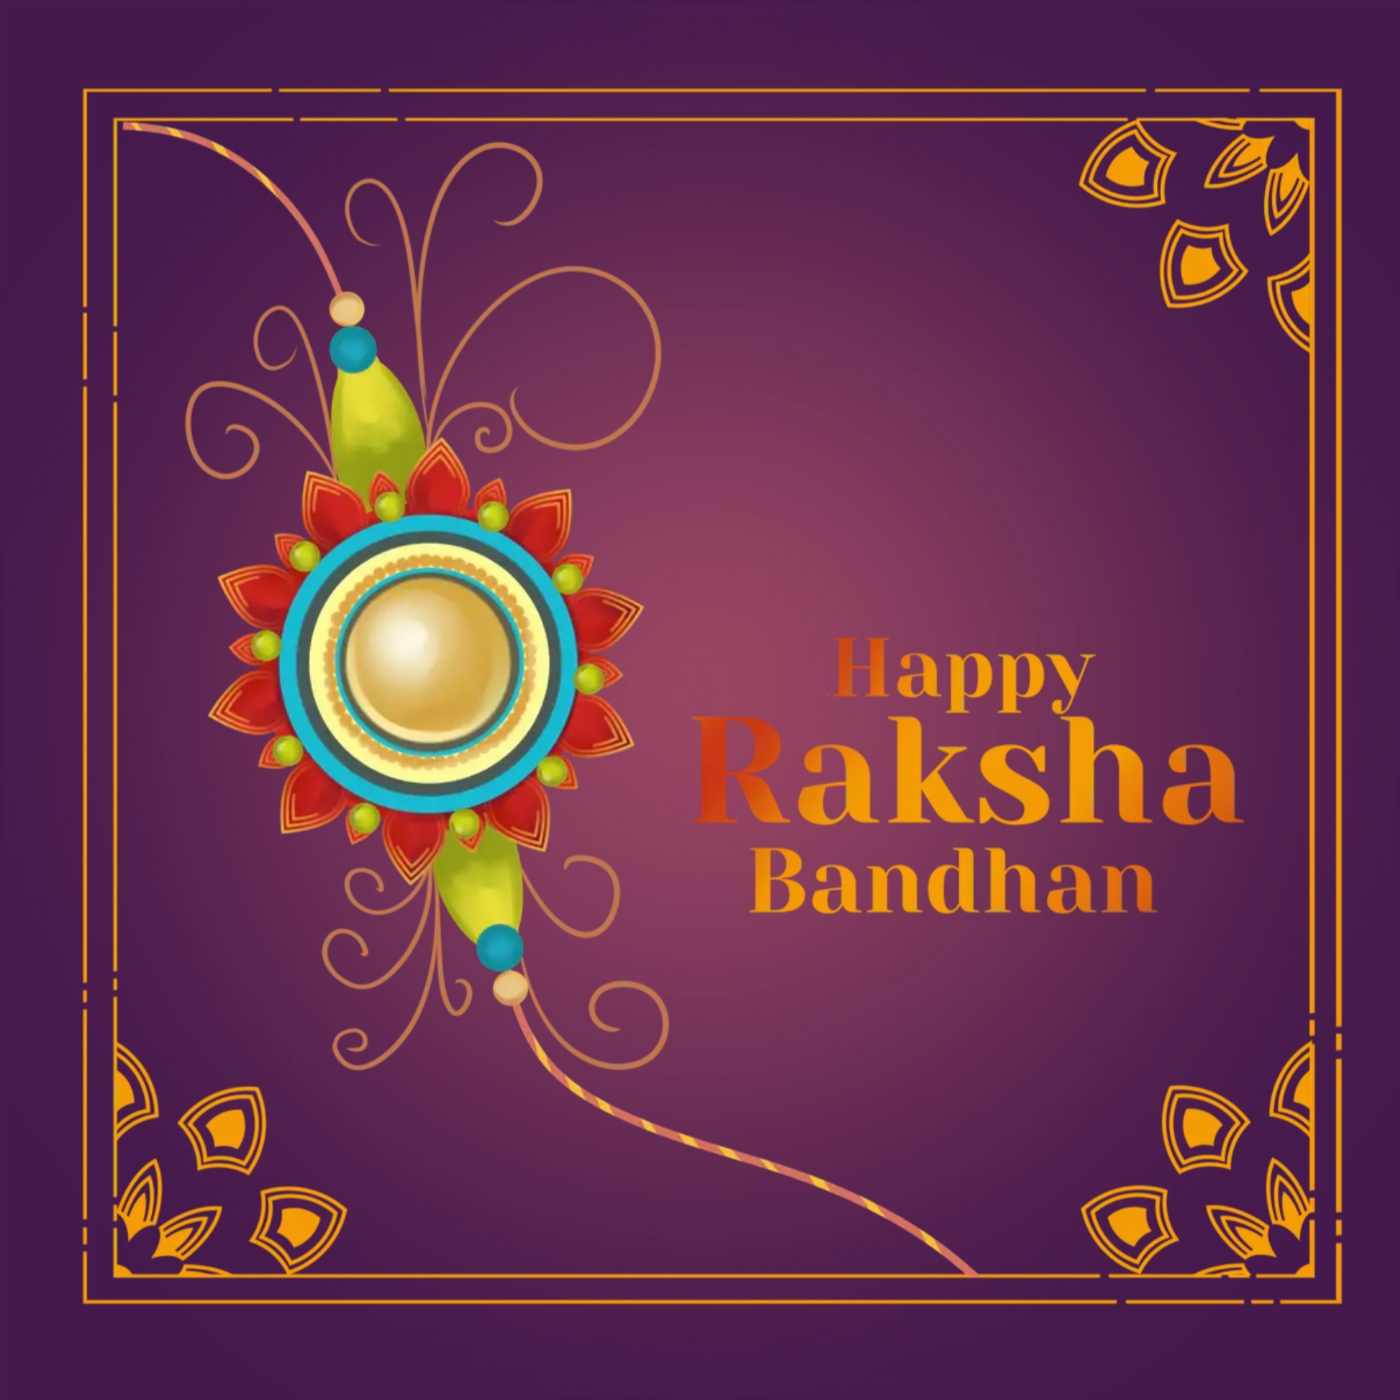 Raksha Bandhan Wishes Images